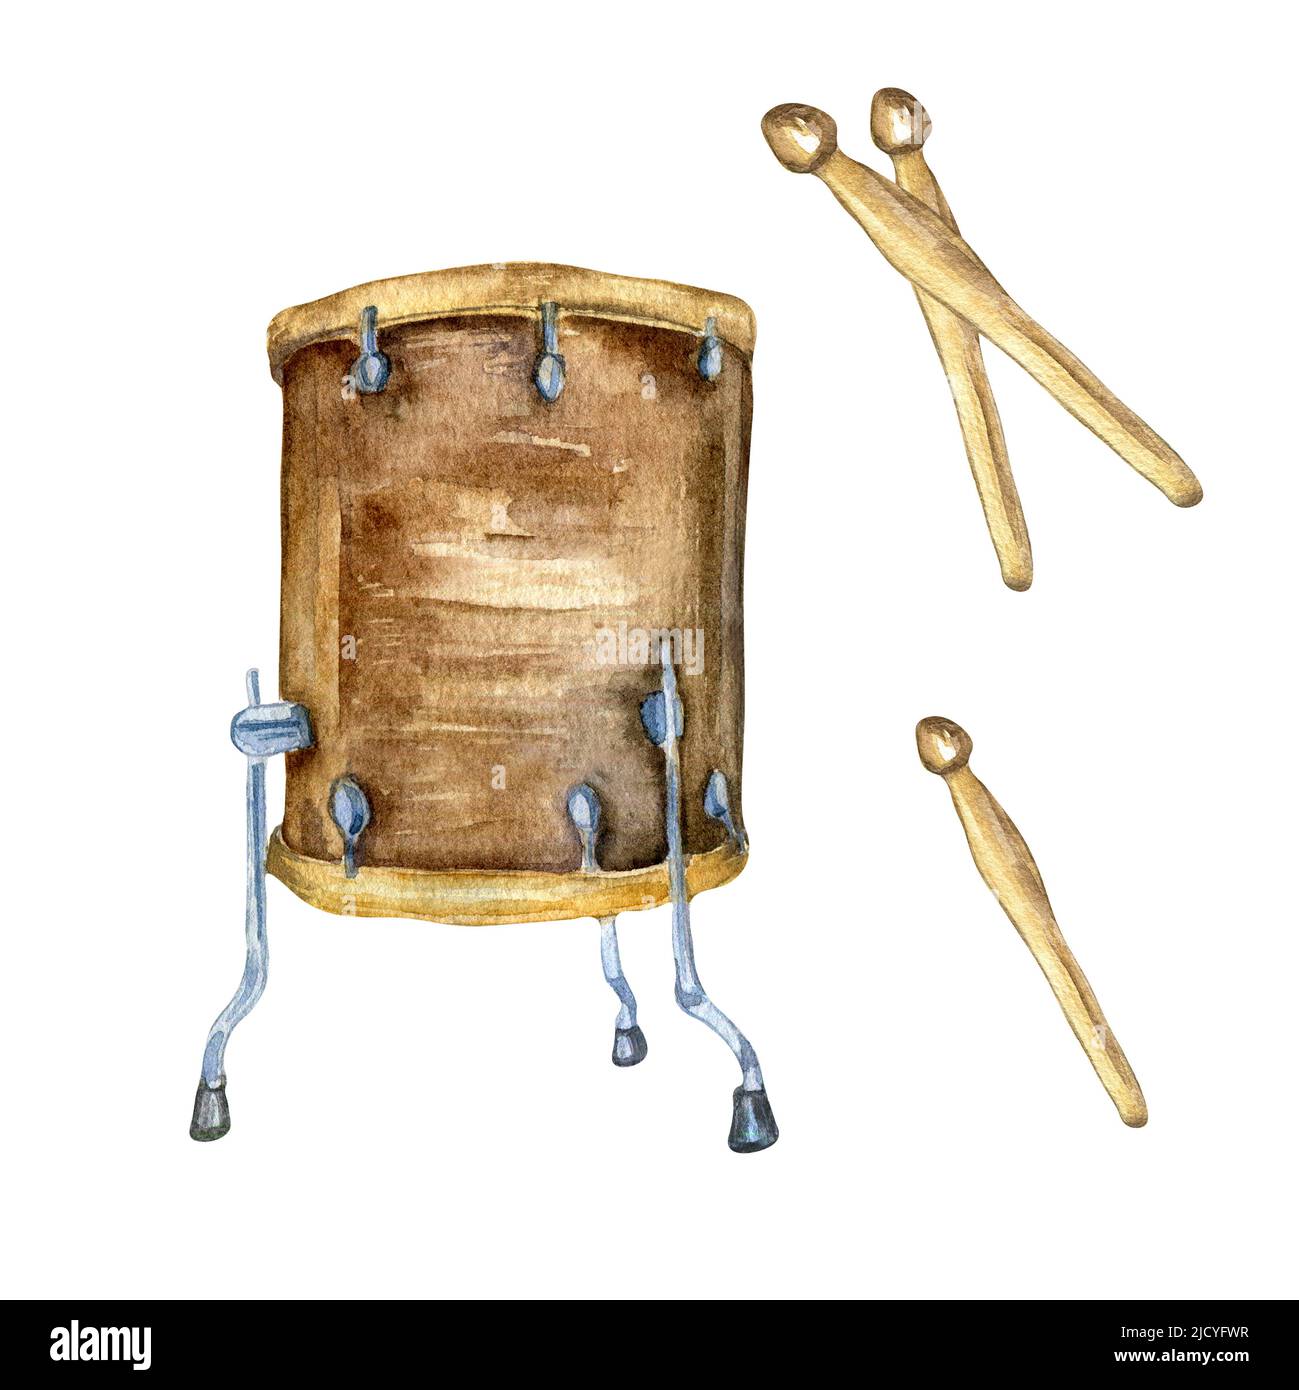 Drum kit, bastoncini acquerello illustrazione isolato. Strumento musicale dipinto a mano. Percussione strumento di jazz, rock, musica folk. Elemen di disegno Foto Stock